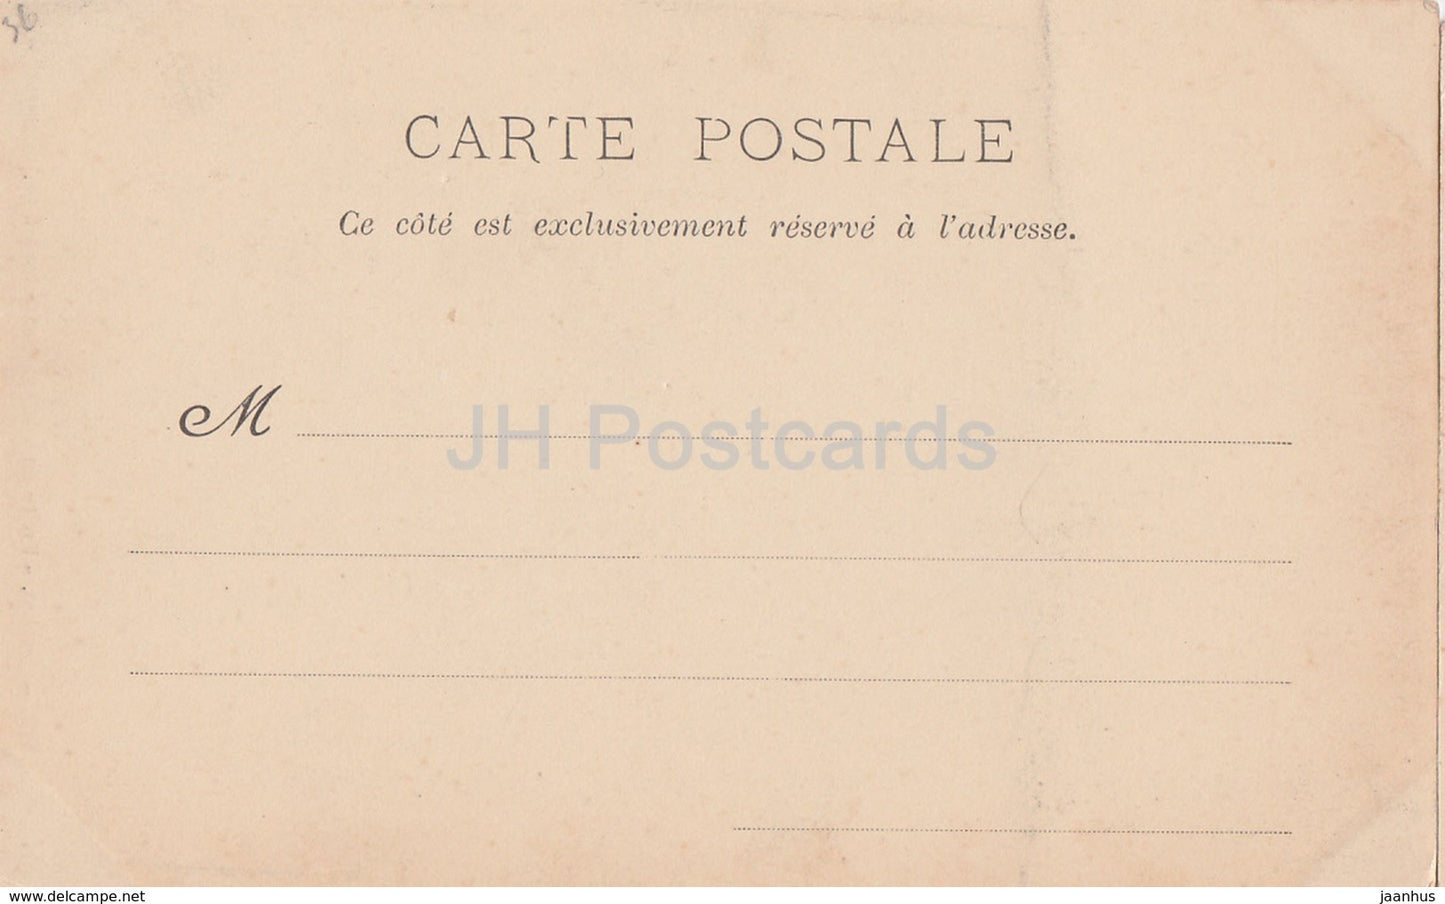 Loches - Porte du Chateau - cote interieur - castle - 112 - old postcard - France - unused